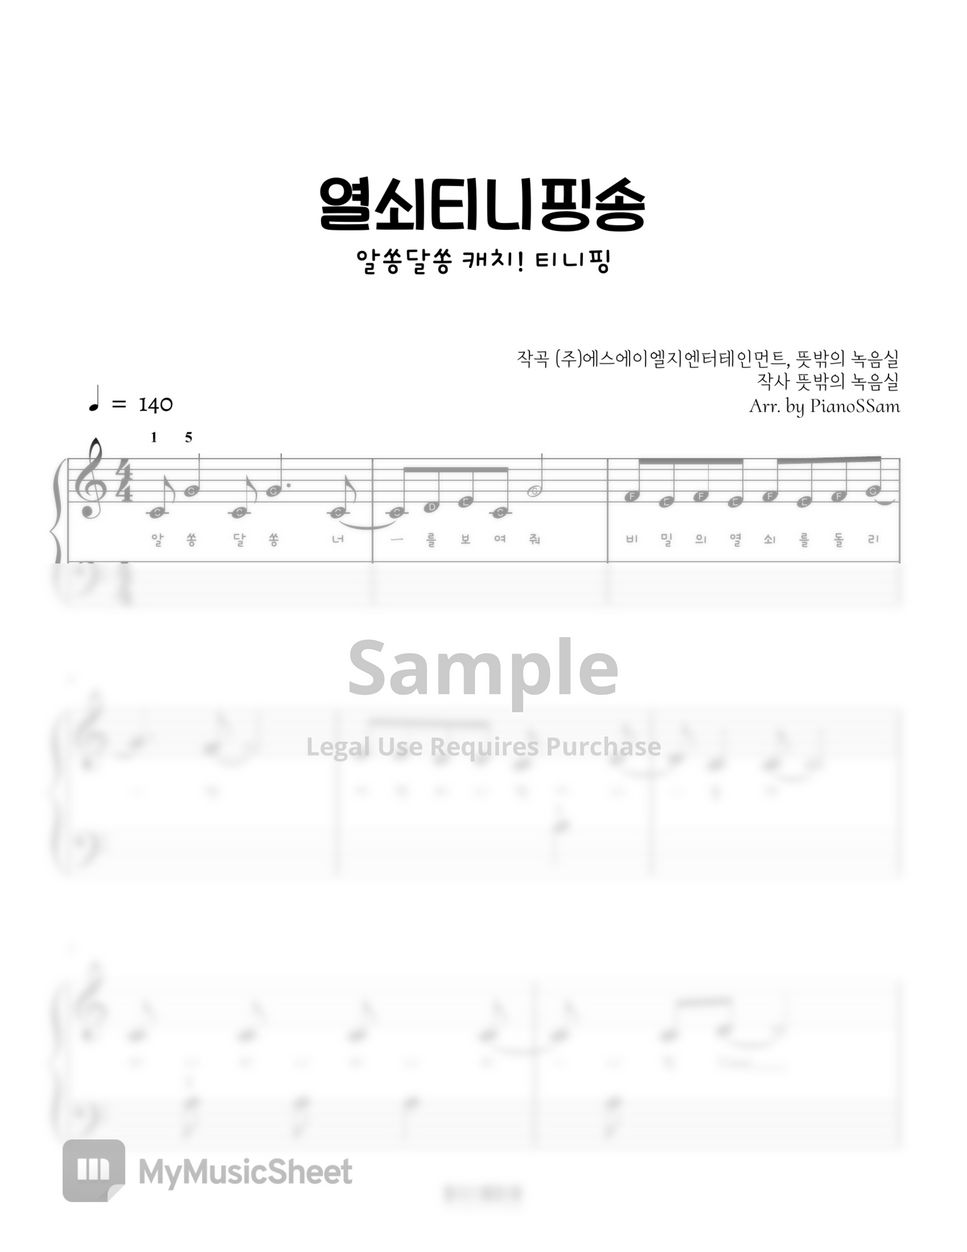 뜻밖의 녹음실 - 티니핑 - 티니핑 열쇠송 (알쏭달쏭 캐치!티니핑) by PianoSSam